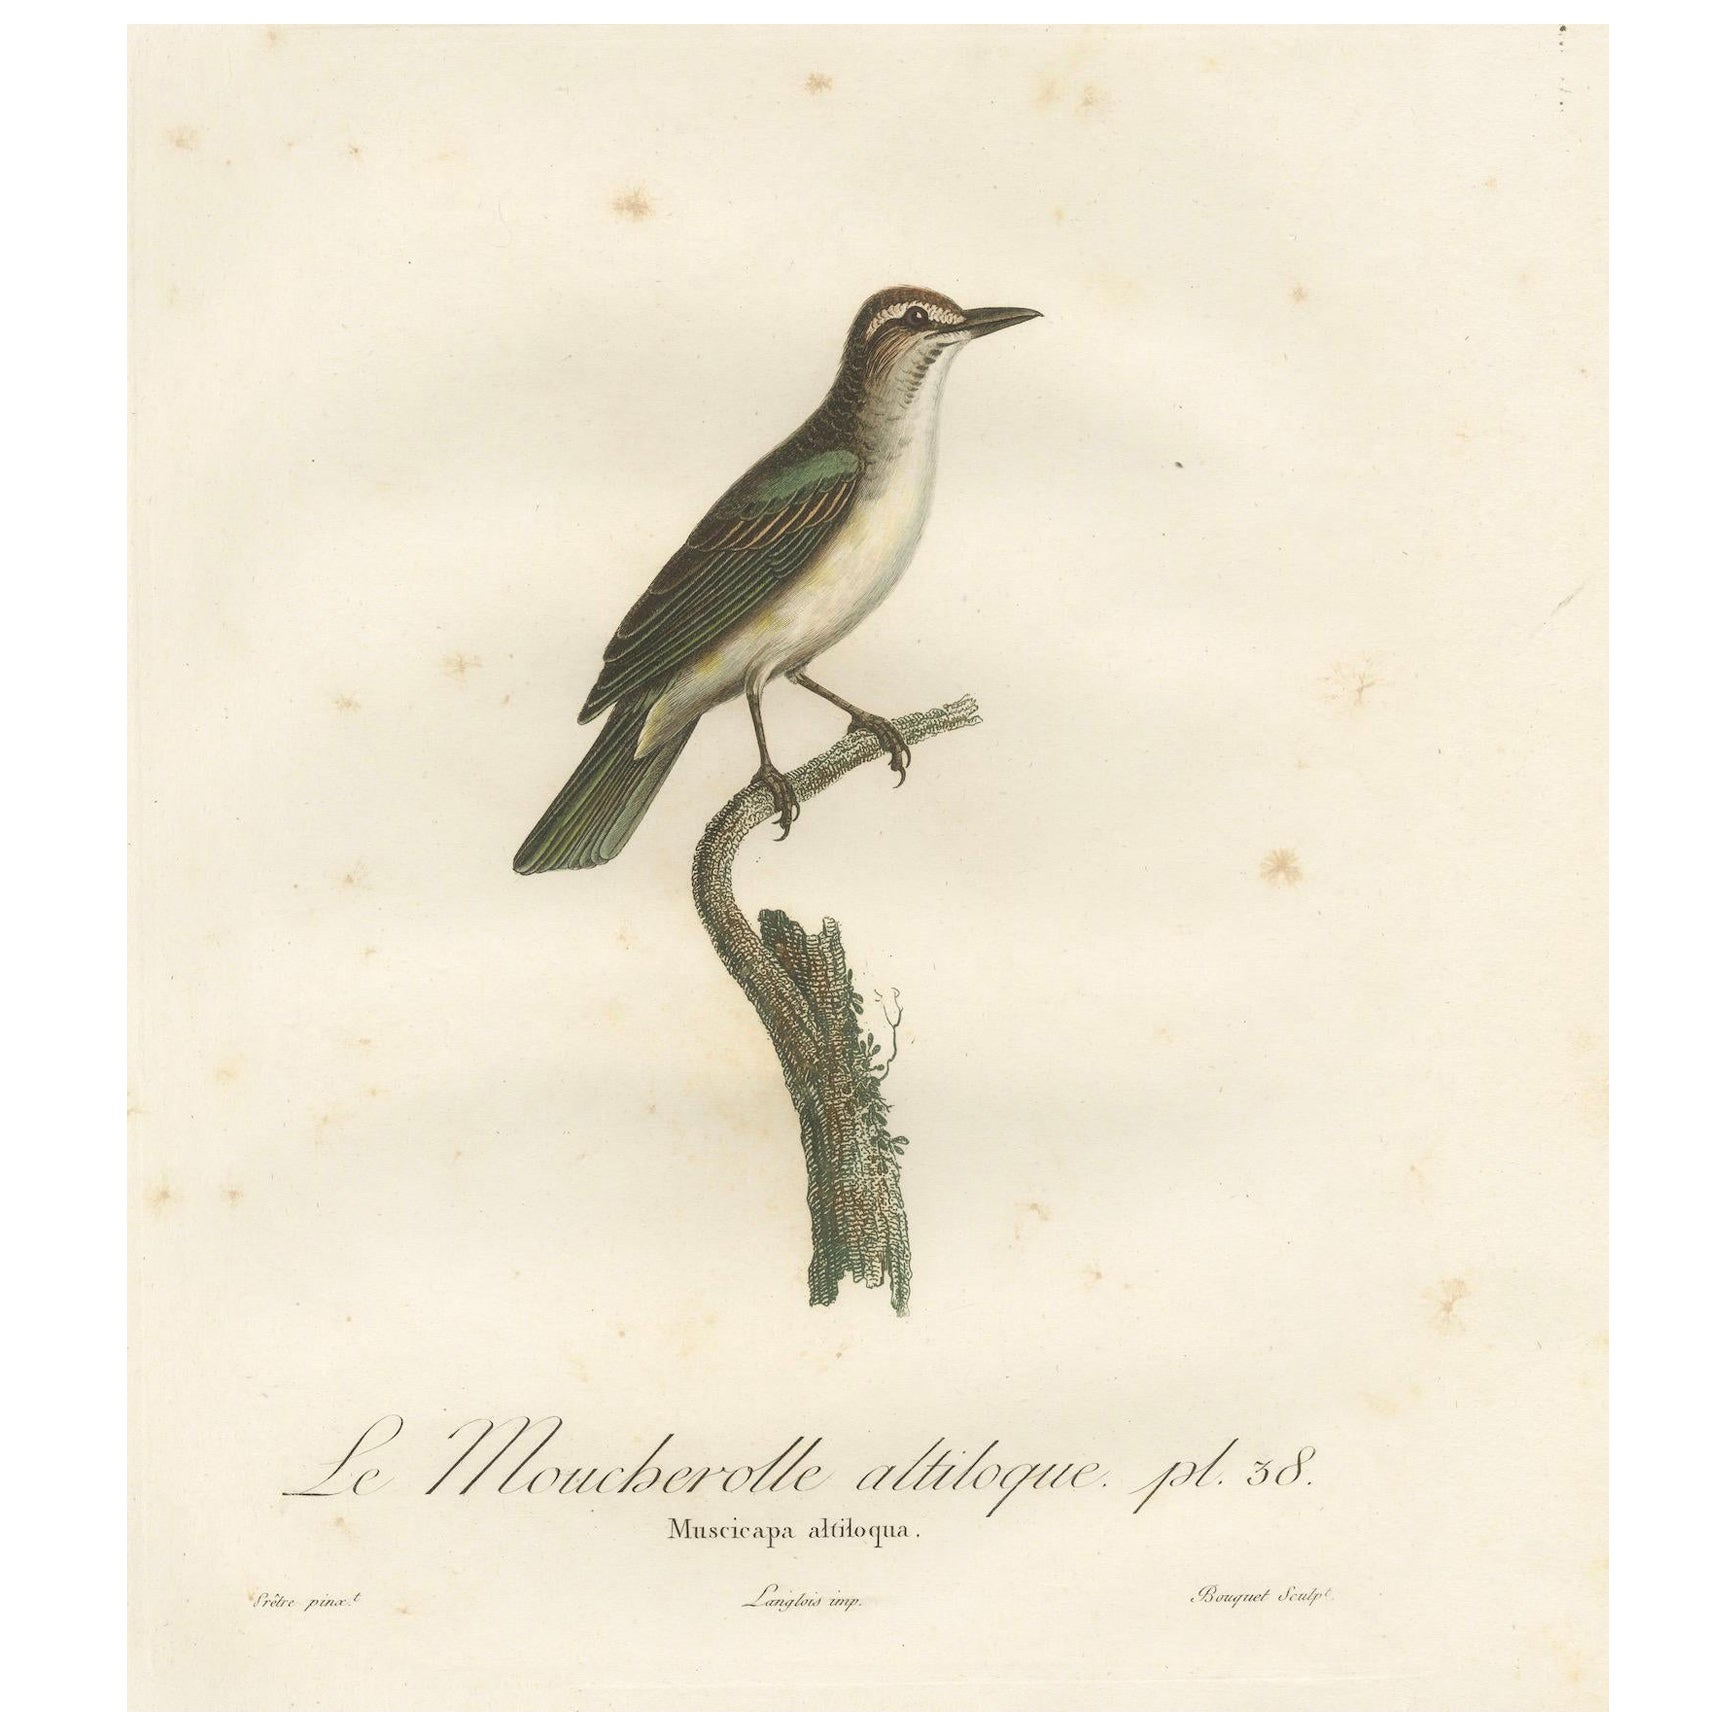 The Black-Whiskered Vireo - Une grande estampe ornithologique de 1807 coloriée à la main 